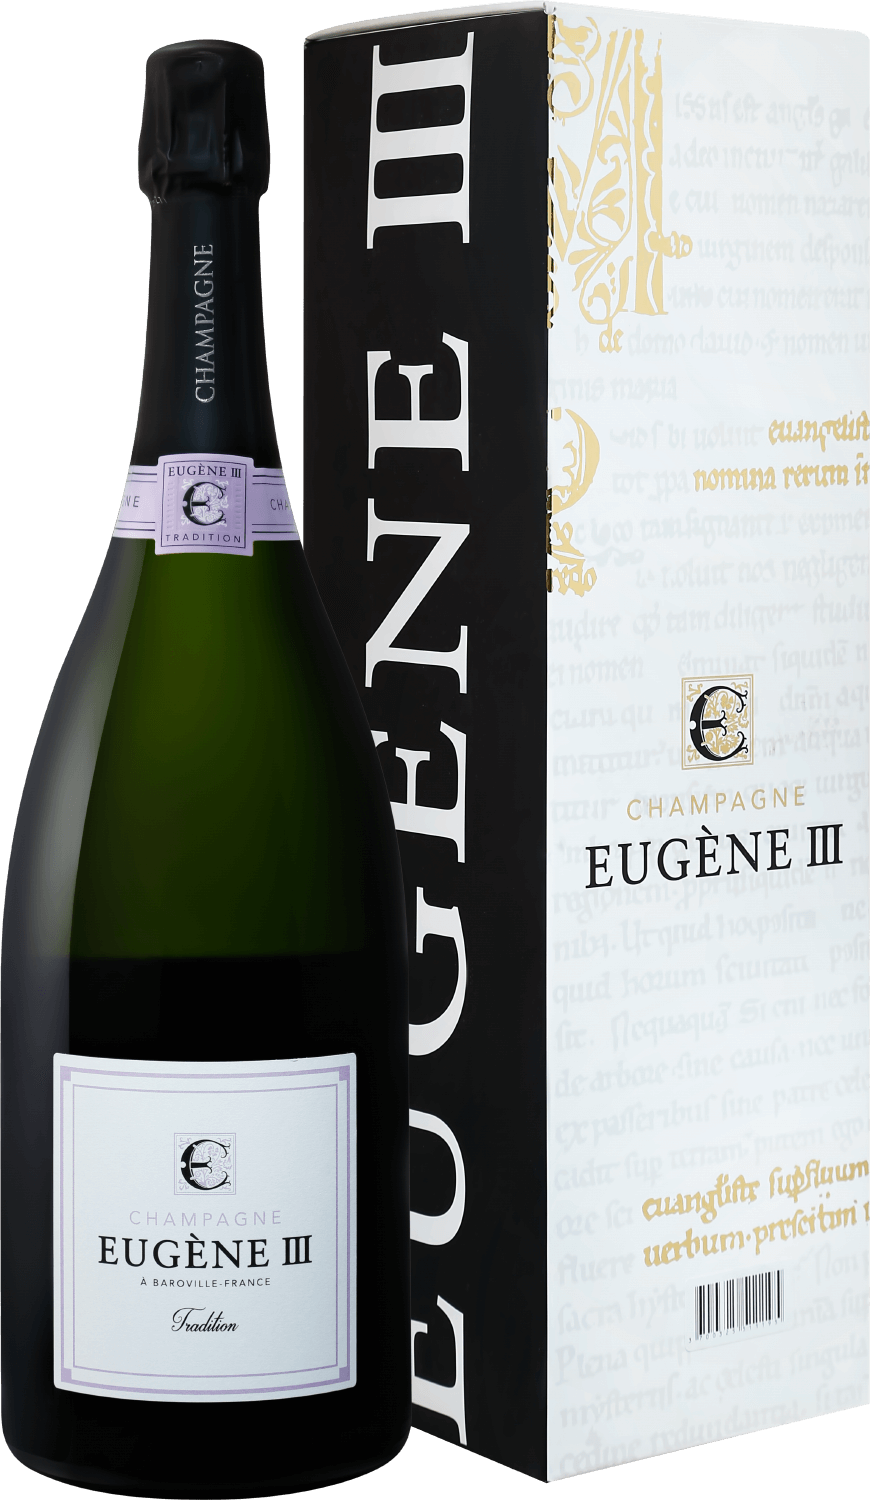 Eugene III Tradition Brut Champagne АOC Coopérative Vinicole de la Région de Baroville (gift box) barfontarc tradition brut champagne аoc coopérative vinicole de la région de baroville